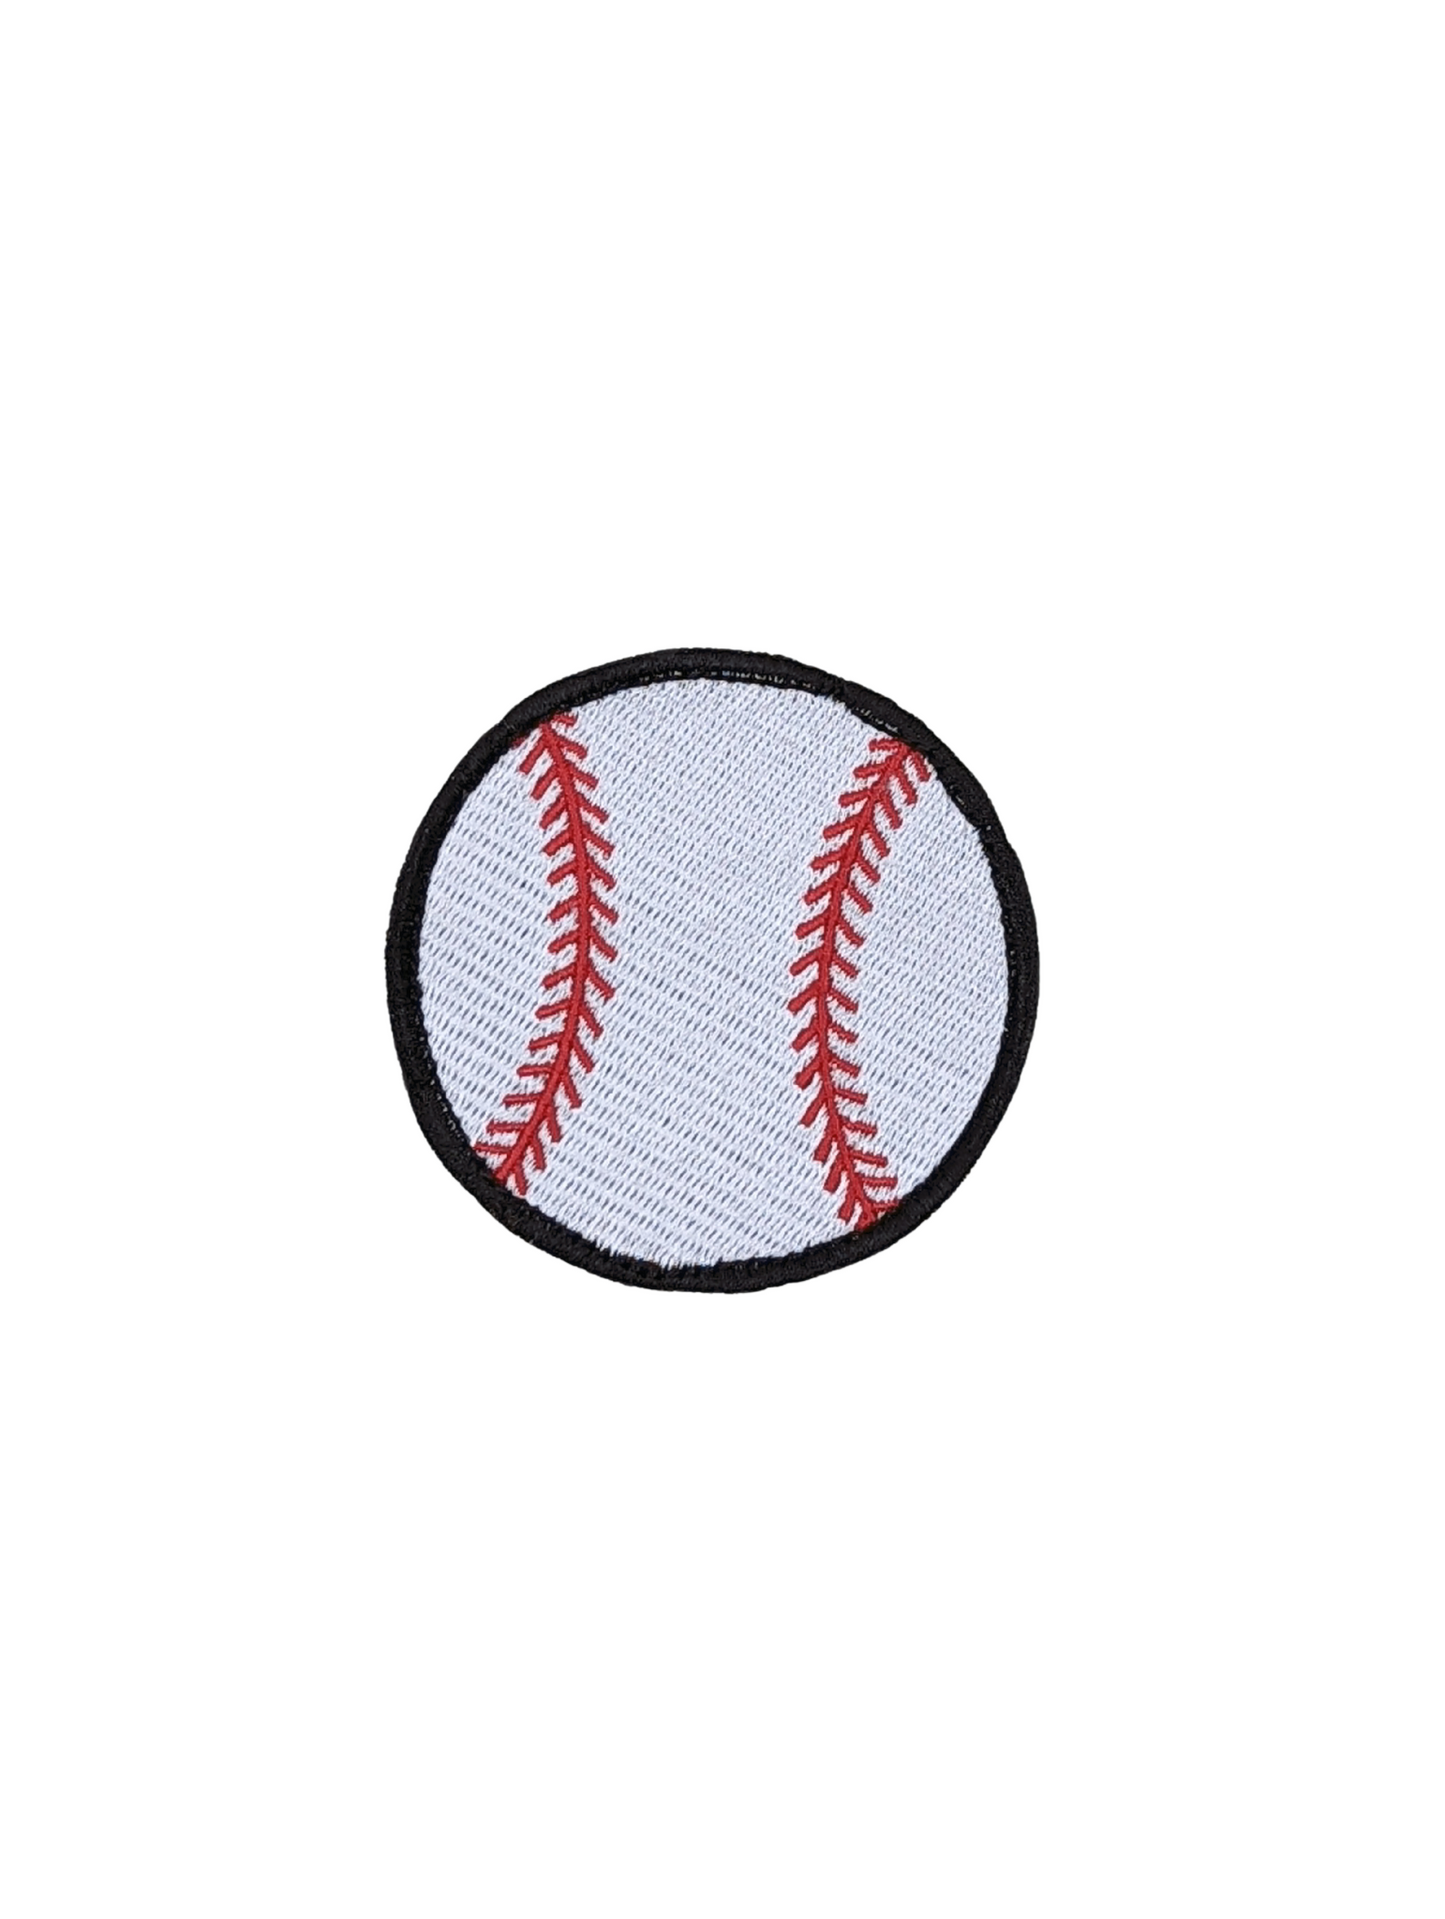 Stiky Baseball Patch